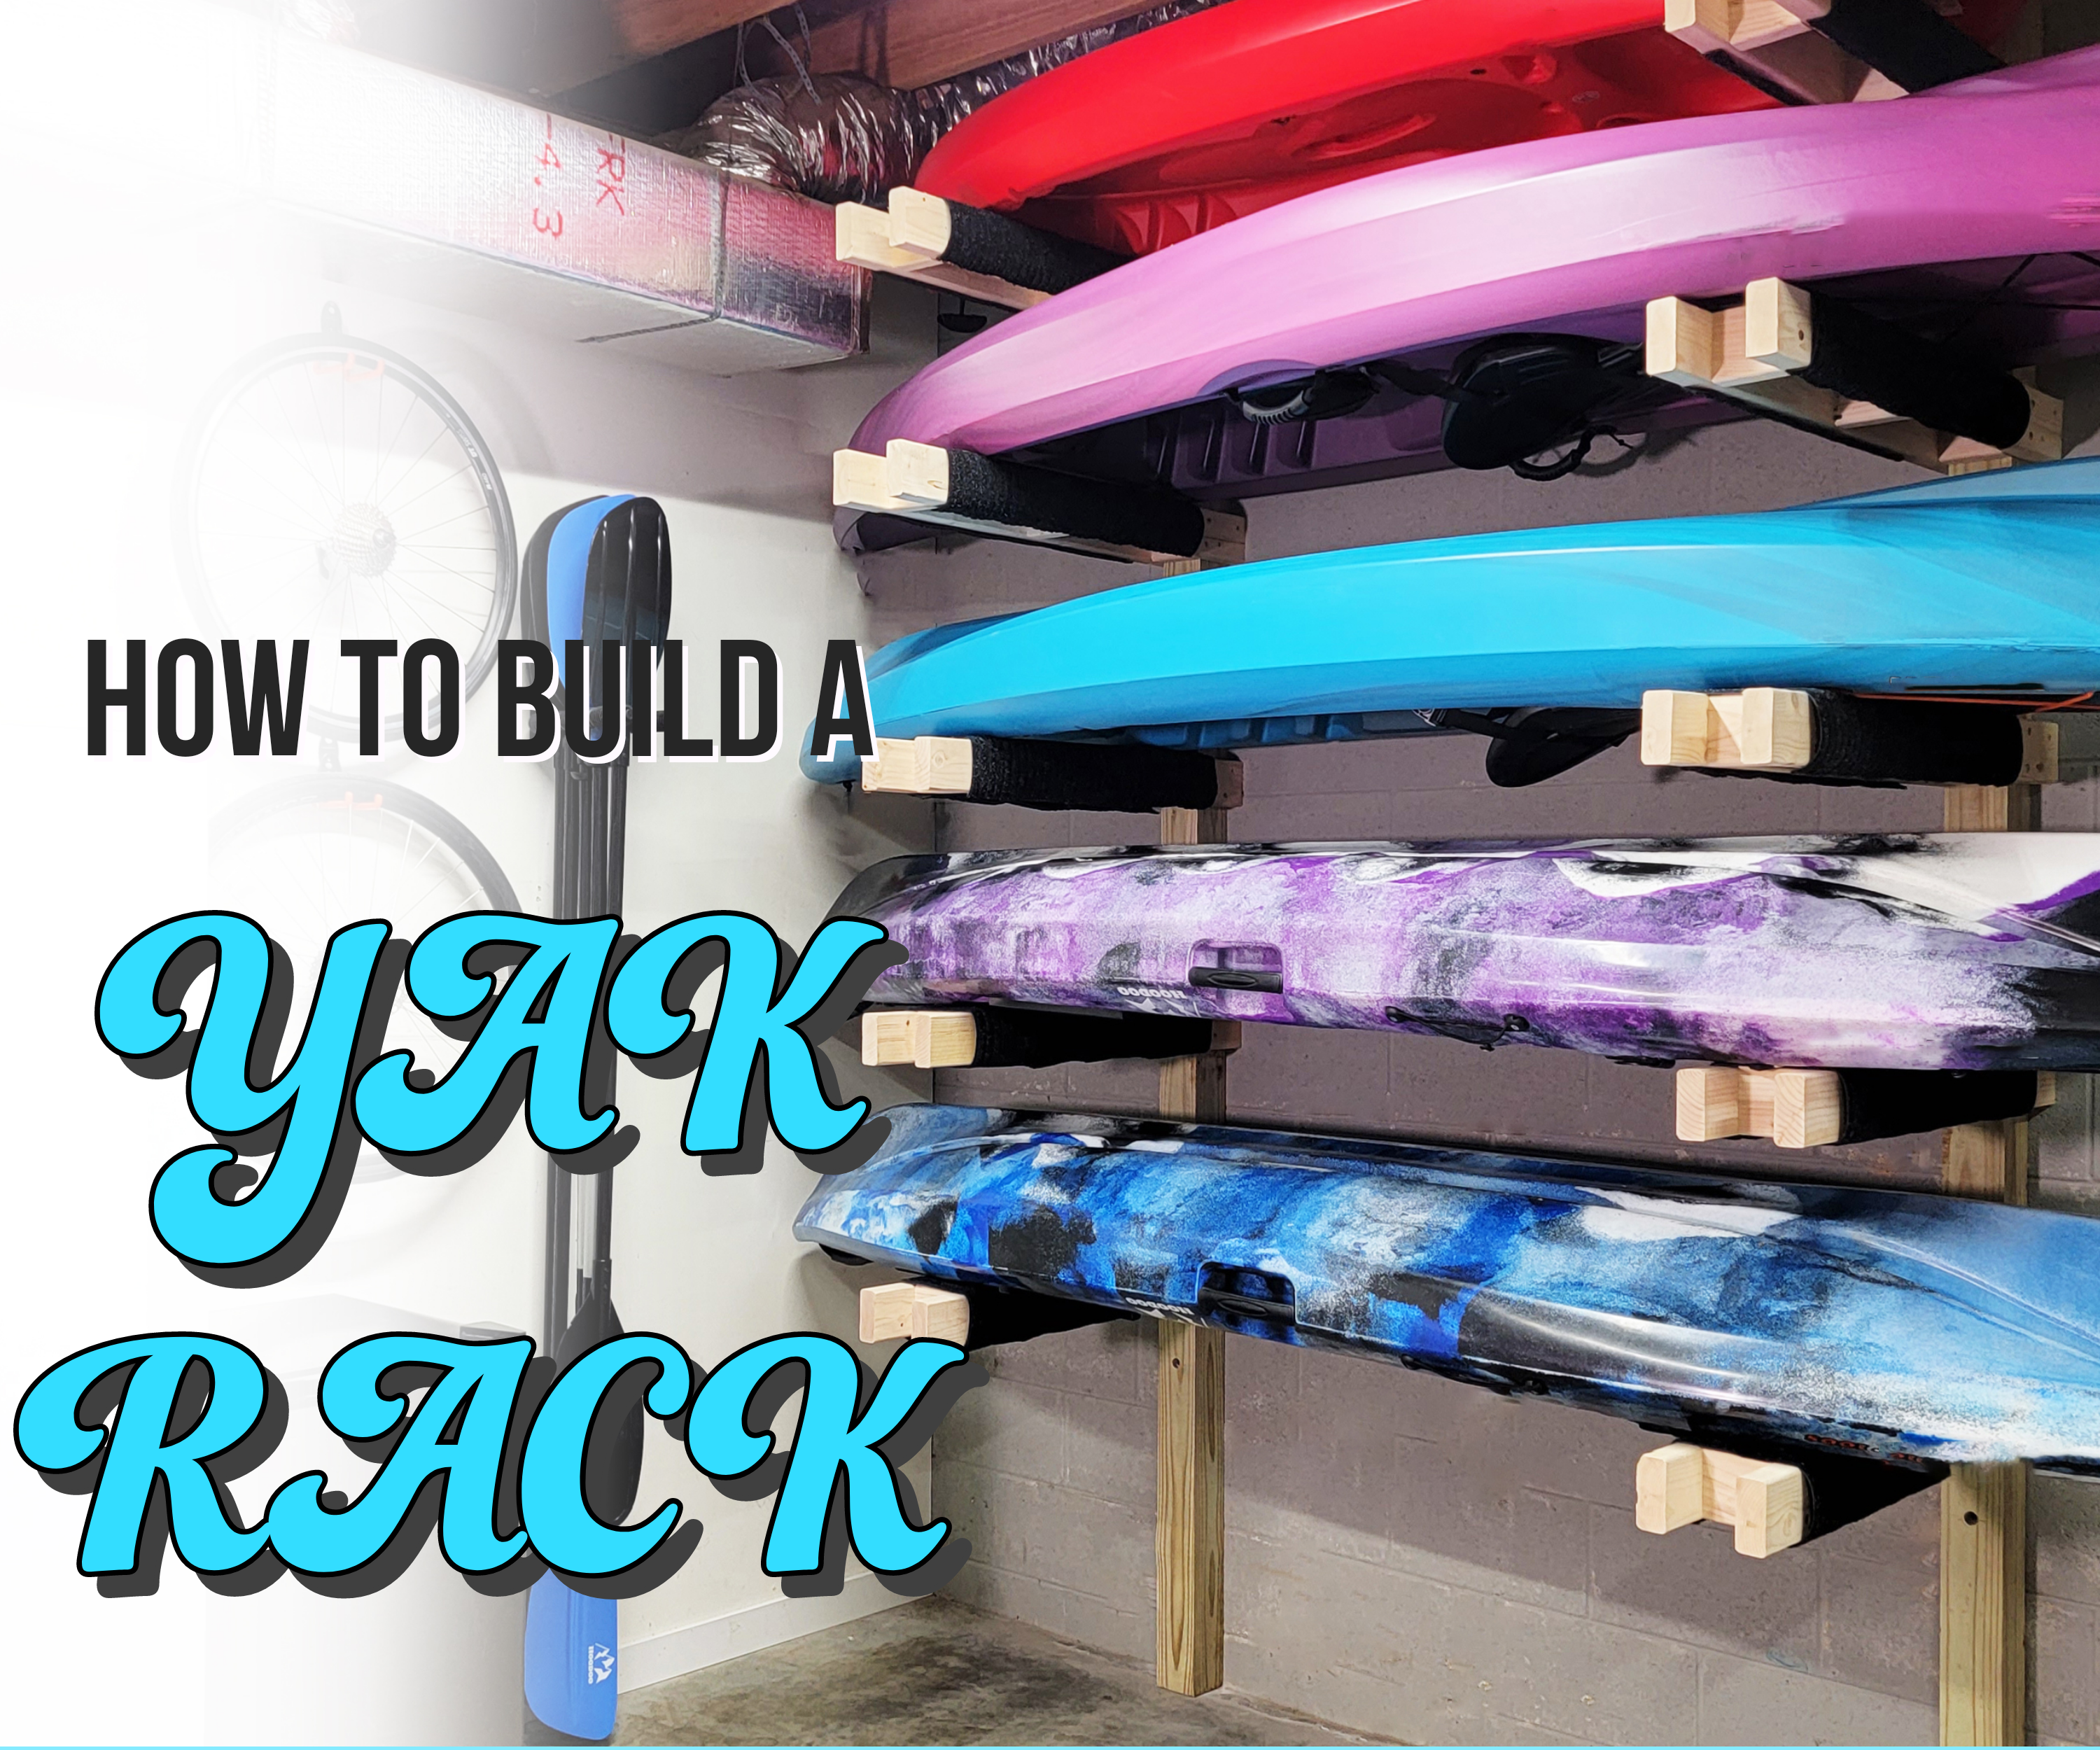 How to Build a Kayak Rack